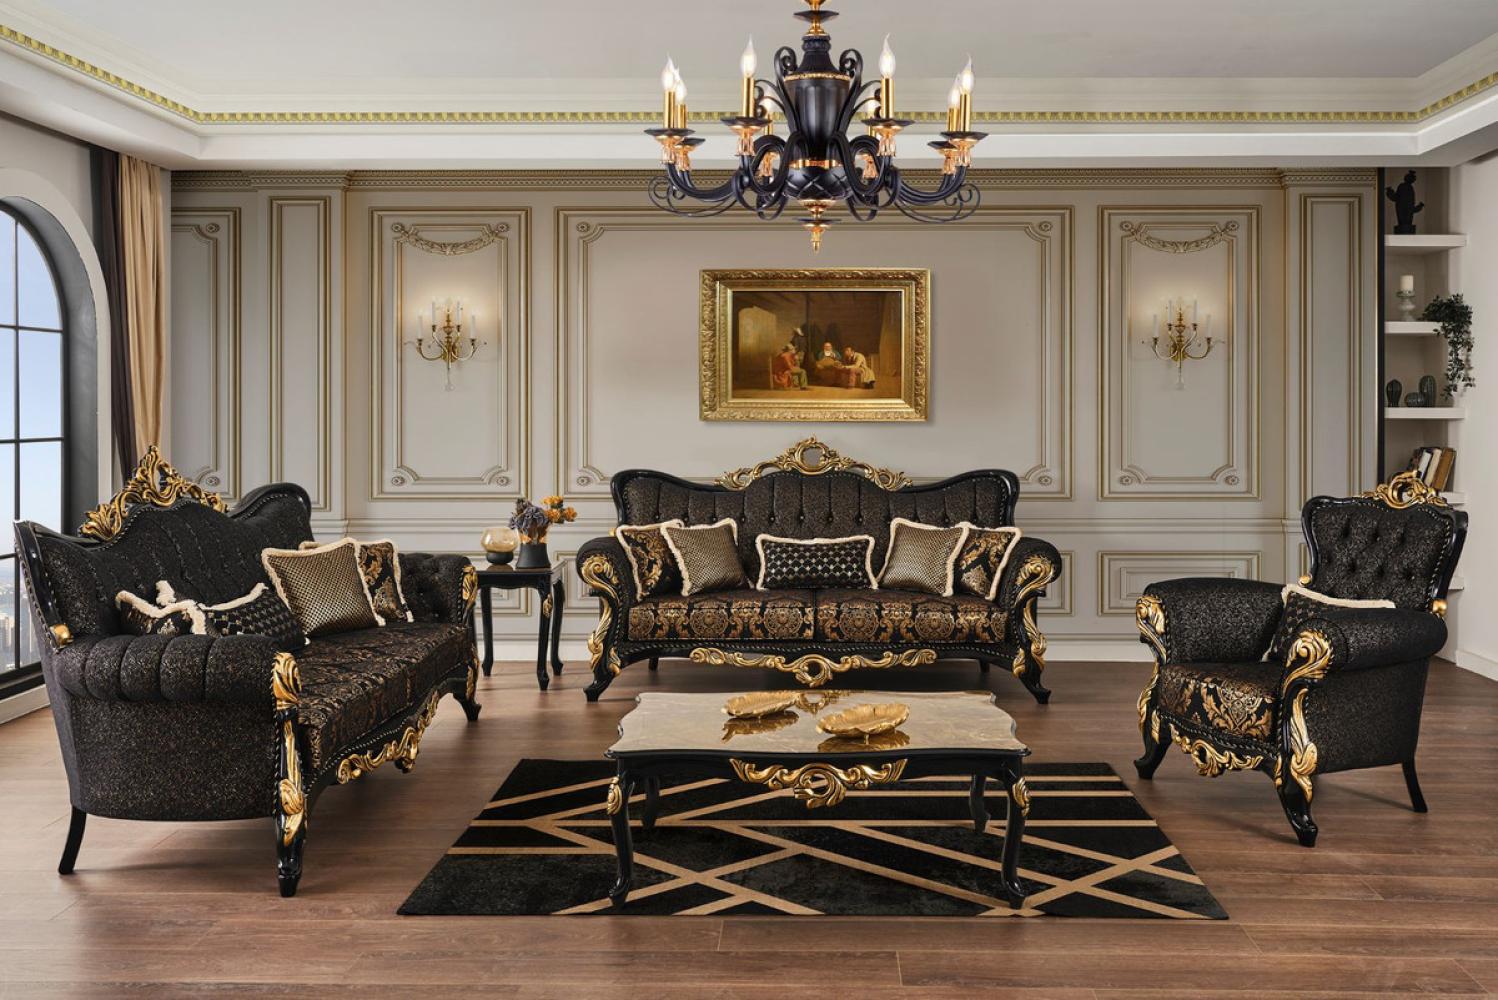 Casa Padrino Luxus Barock Wohnzimmer Set Braun / Schwarz / Gold - 2 Sofas & 2 Sessel & 1 Couchtisch & 2 Beistelltische - Wohnzimmer Möbel im Barockstil - Edel & Prunkvoll Bild 1